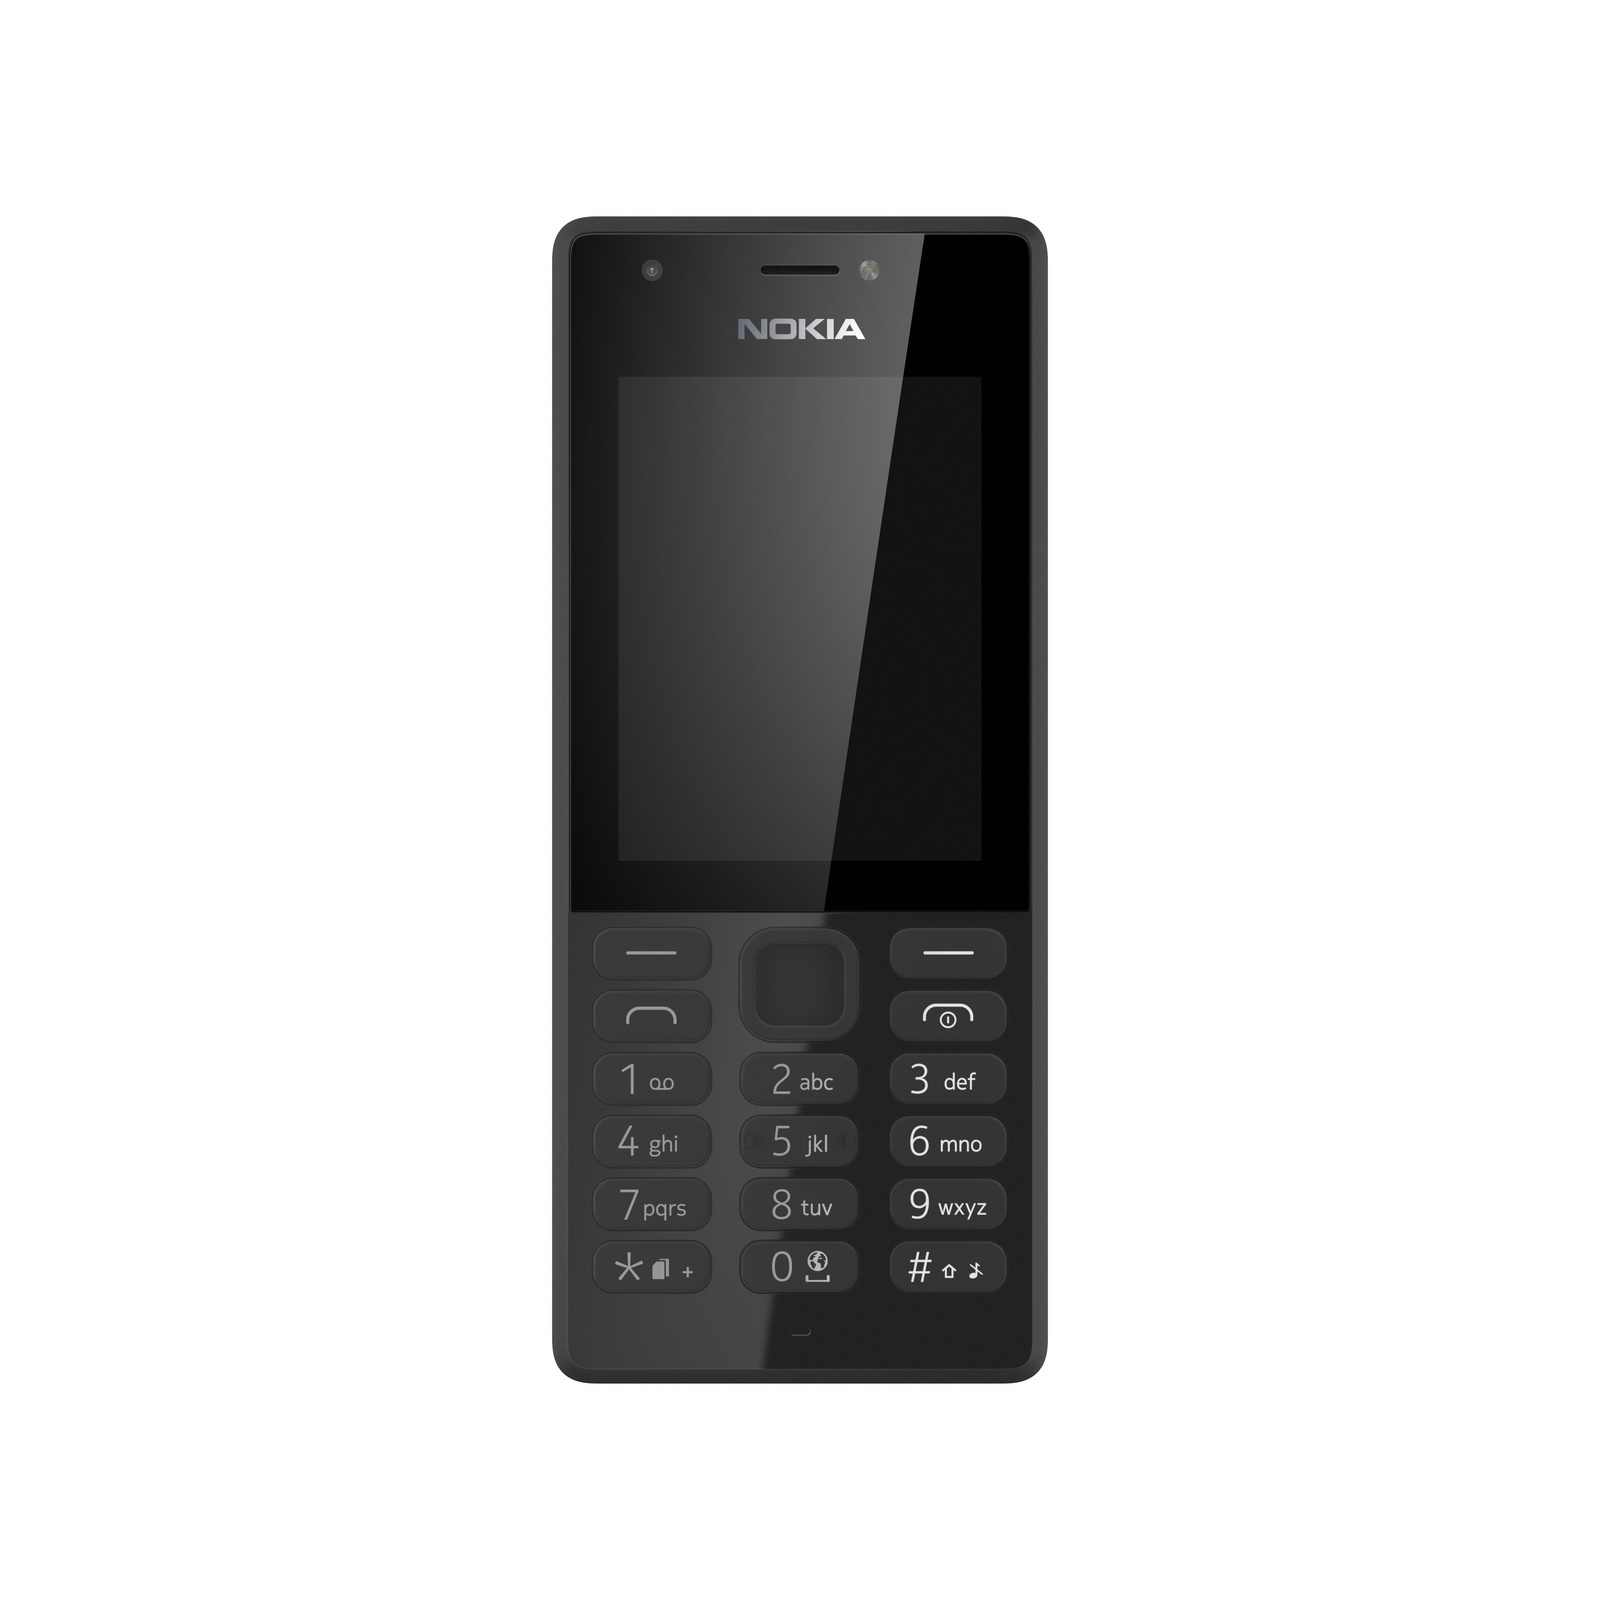 Картинка телефона нокиа. Nokia 216 Dual SIM Black. Телефон Nokia 216 DS Black. Nokia 216 Dual SIM черный. Nokia 216 (RM-1187).